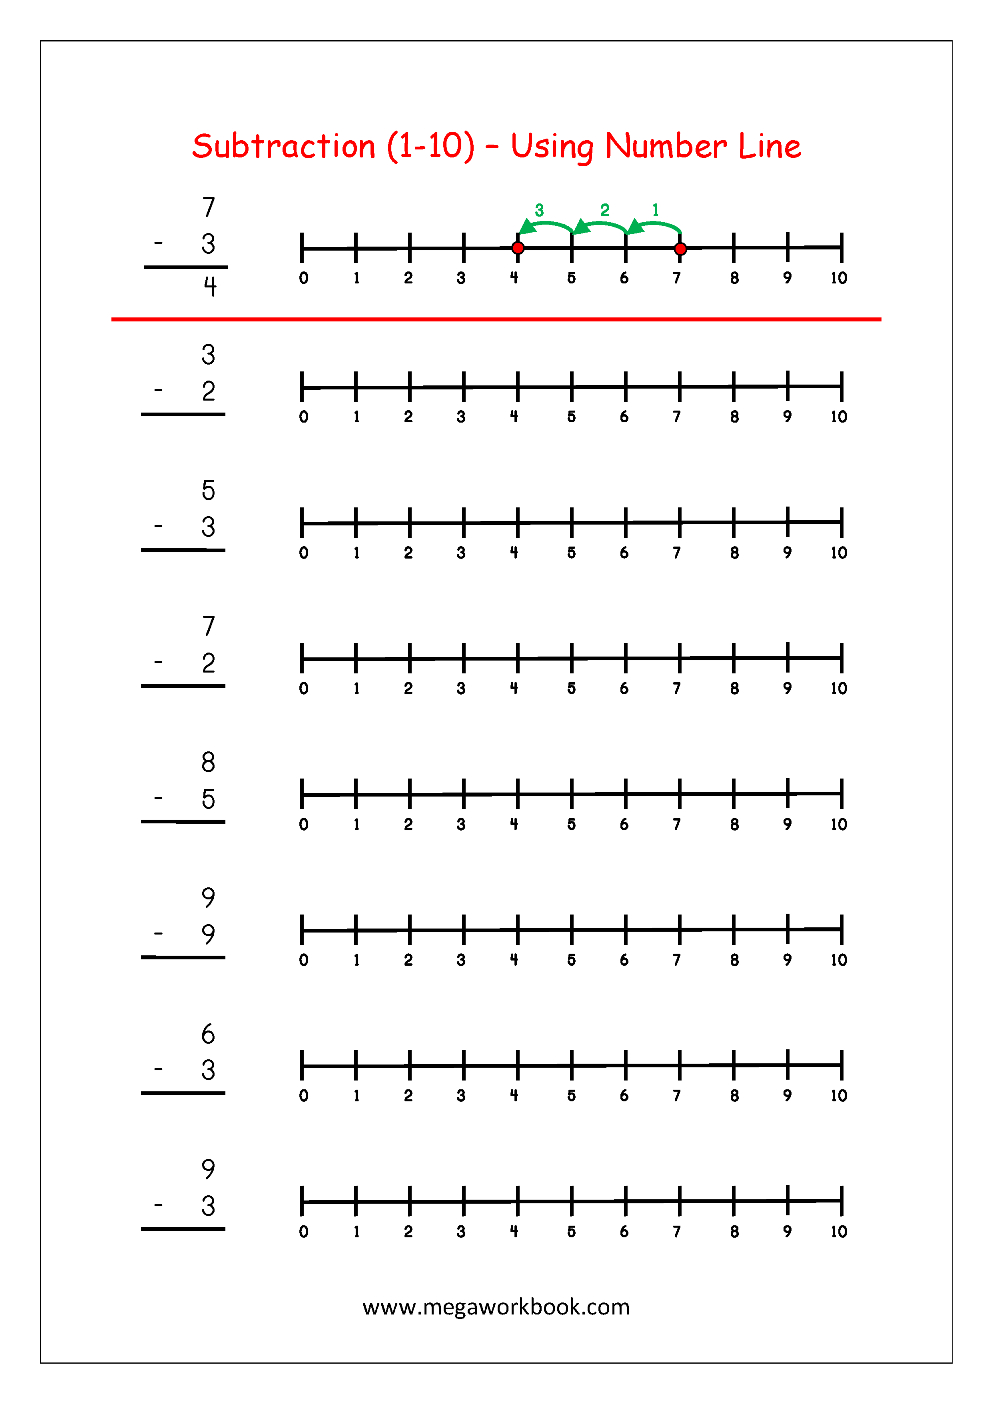 Subtraction Using Number Line | Maths Worksheets For Kindergarten - Free Printable Number Line Worksheets